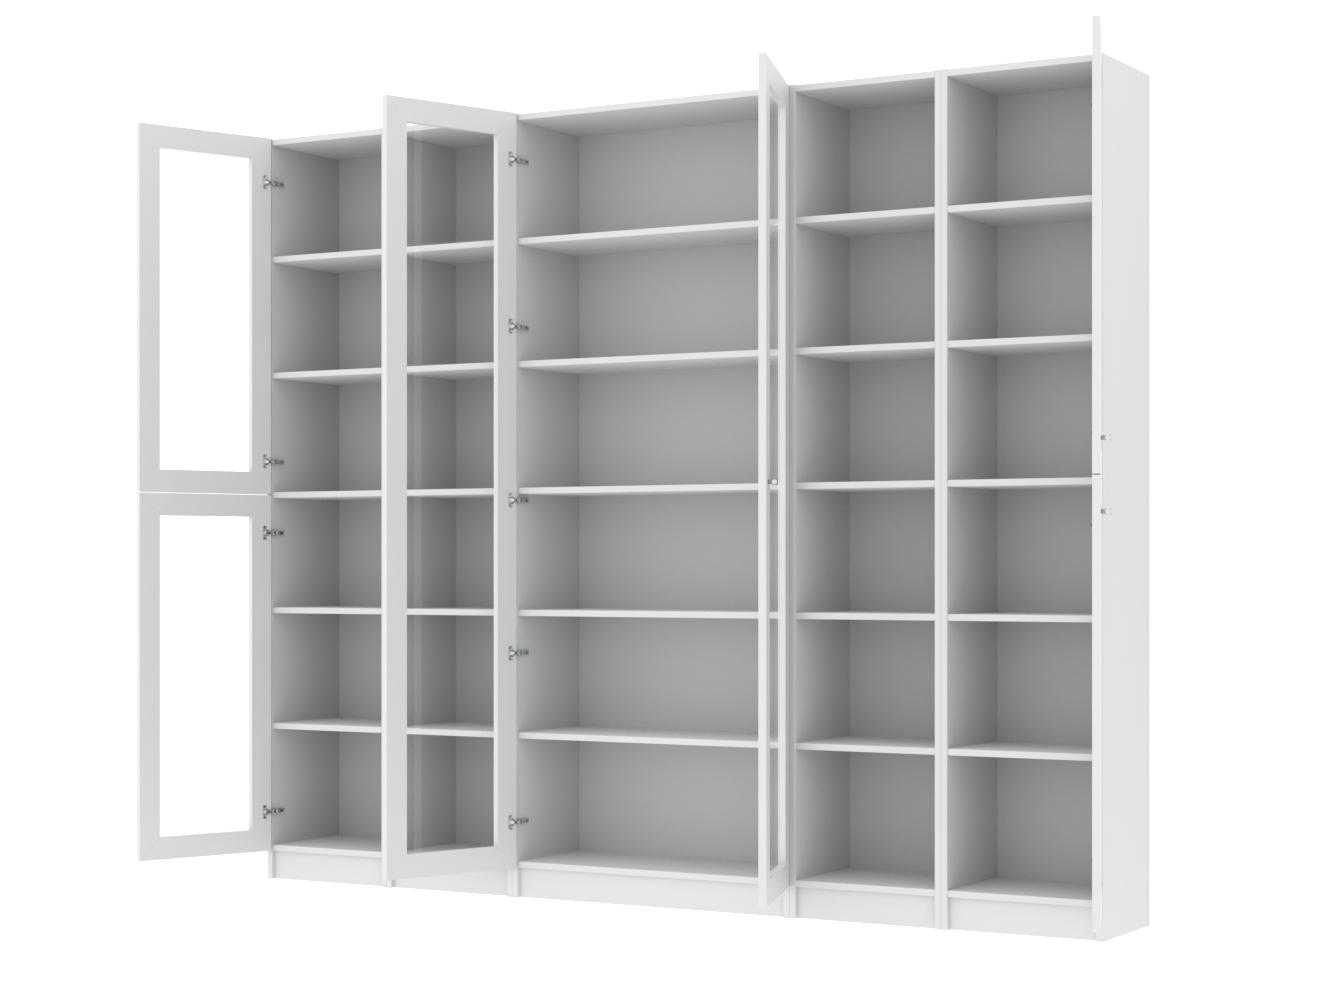 Изображение товара Книжный шкаф Билли 368 white ИКЕА (IKEA), 240x30x202 см на сайте adeta.ru